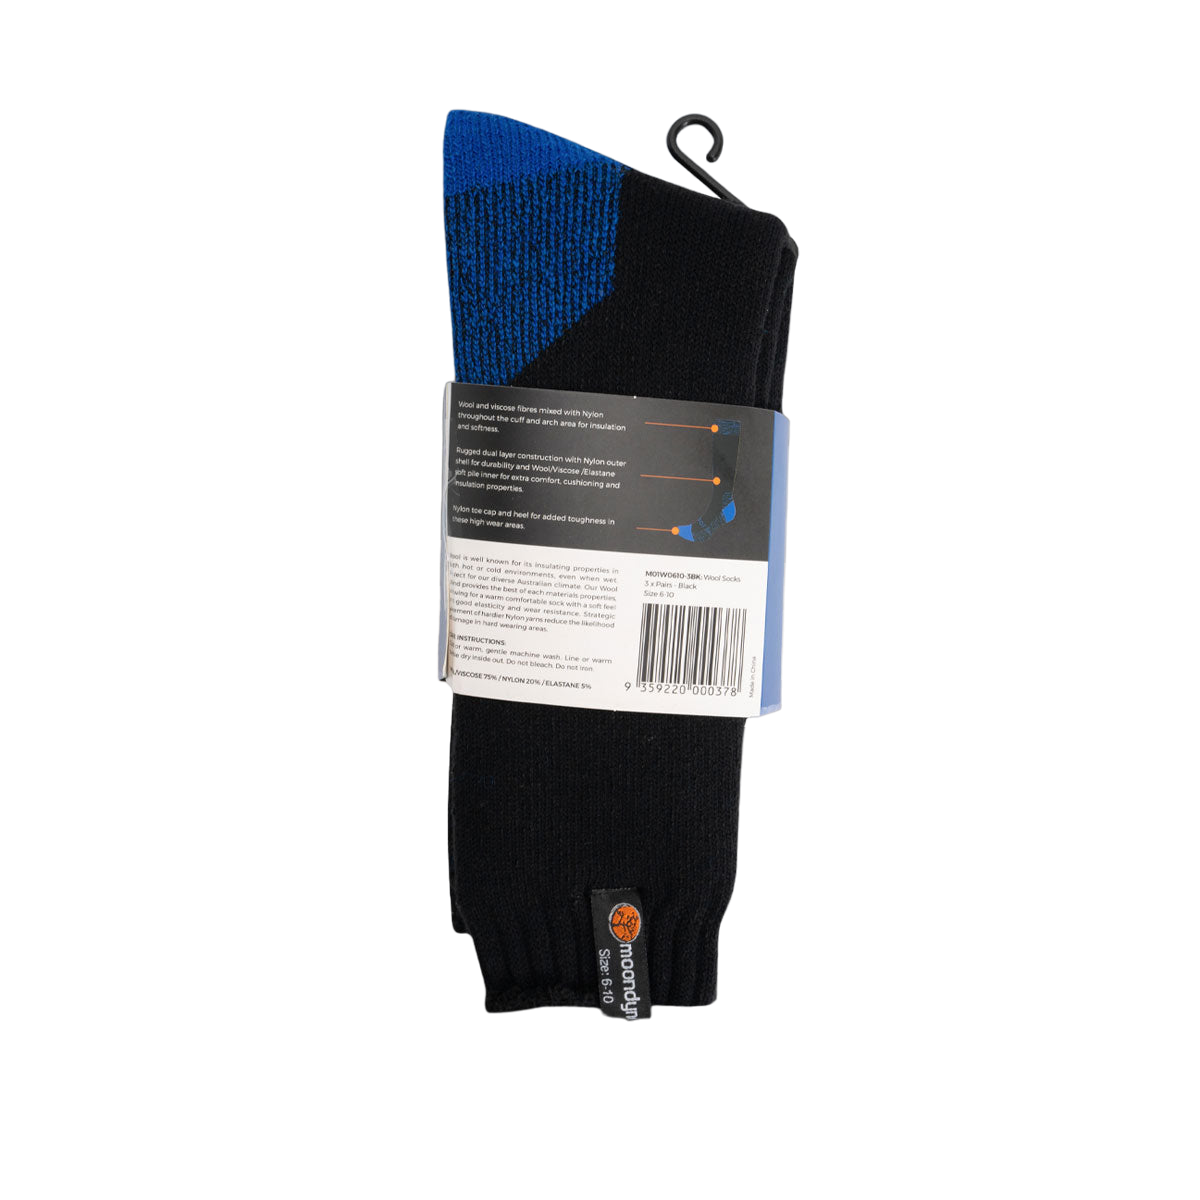 Premium 3 Pair Wool Socks Black Size 6-10 M01W0610-3BK by Moondyne